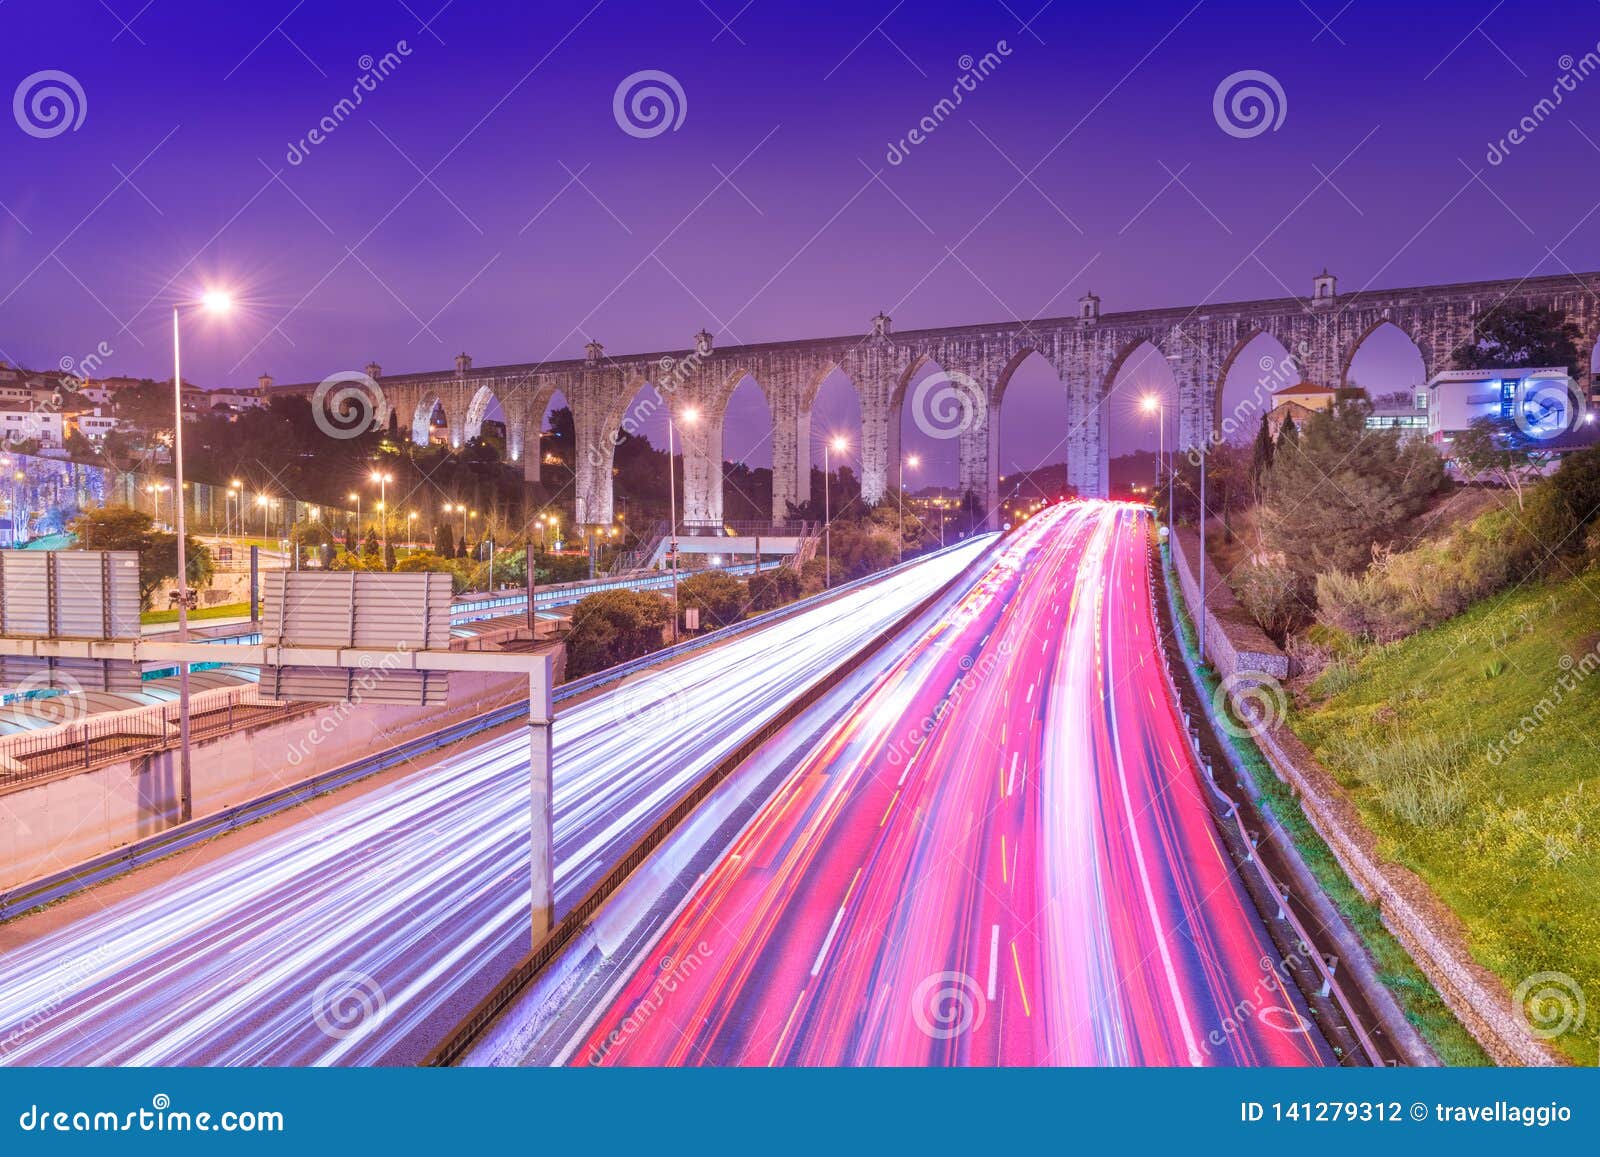 view of highway with car traffic and light trails. the aguas livres aqueduct aqueduto das ÃÂguas livres in lisbon, portugal